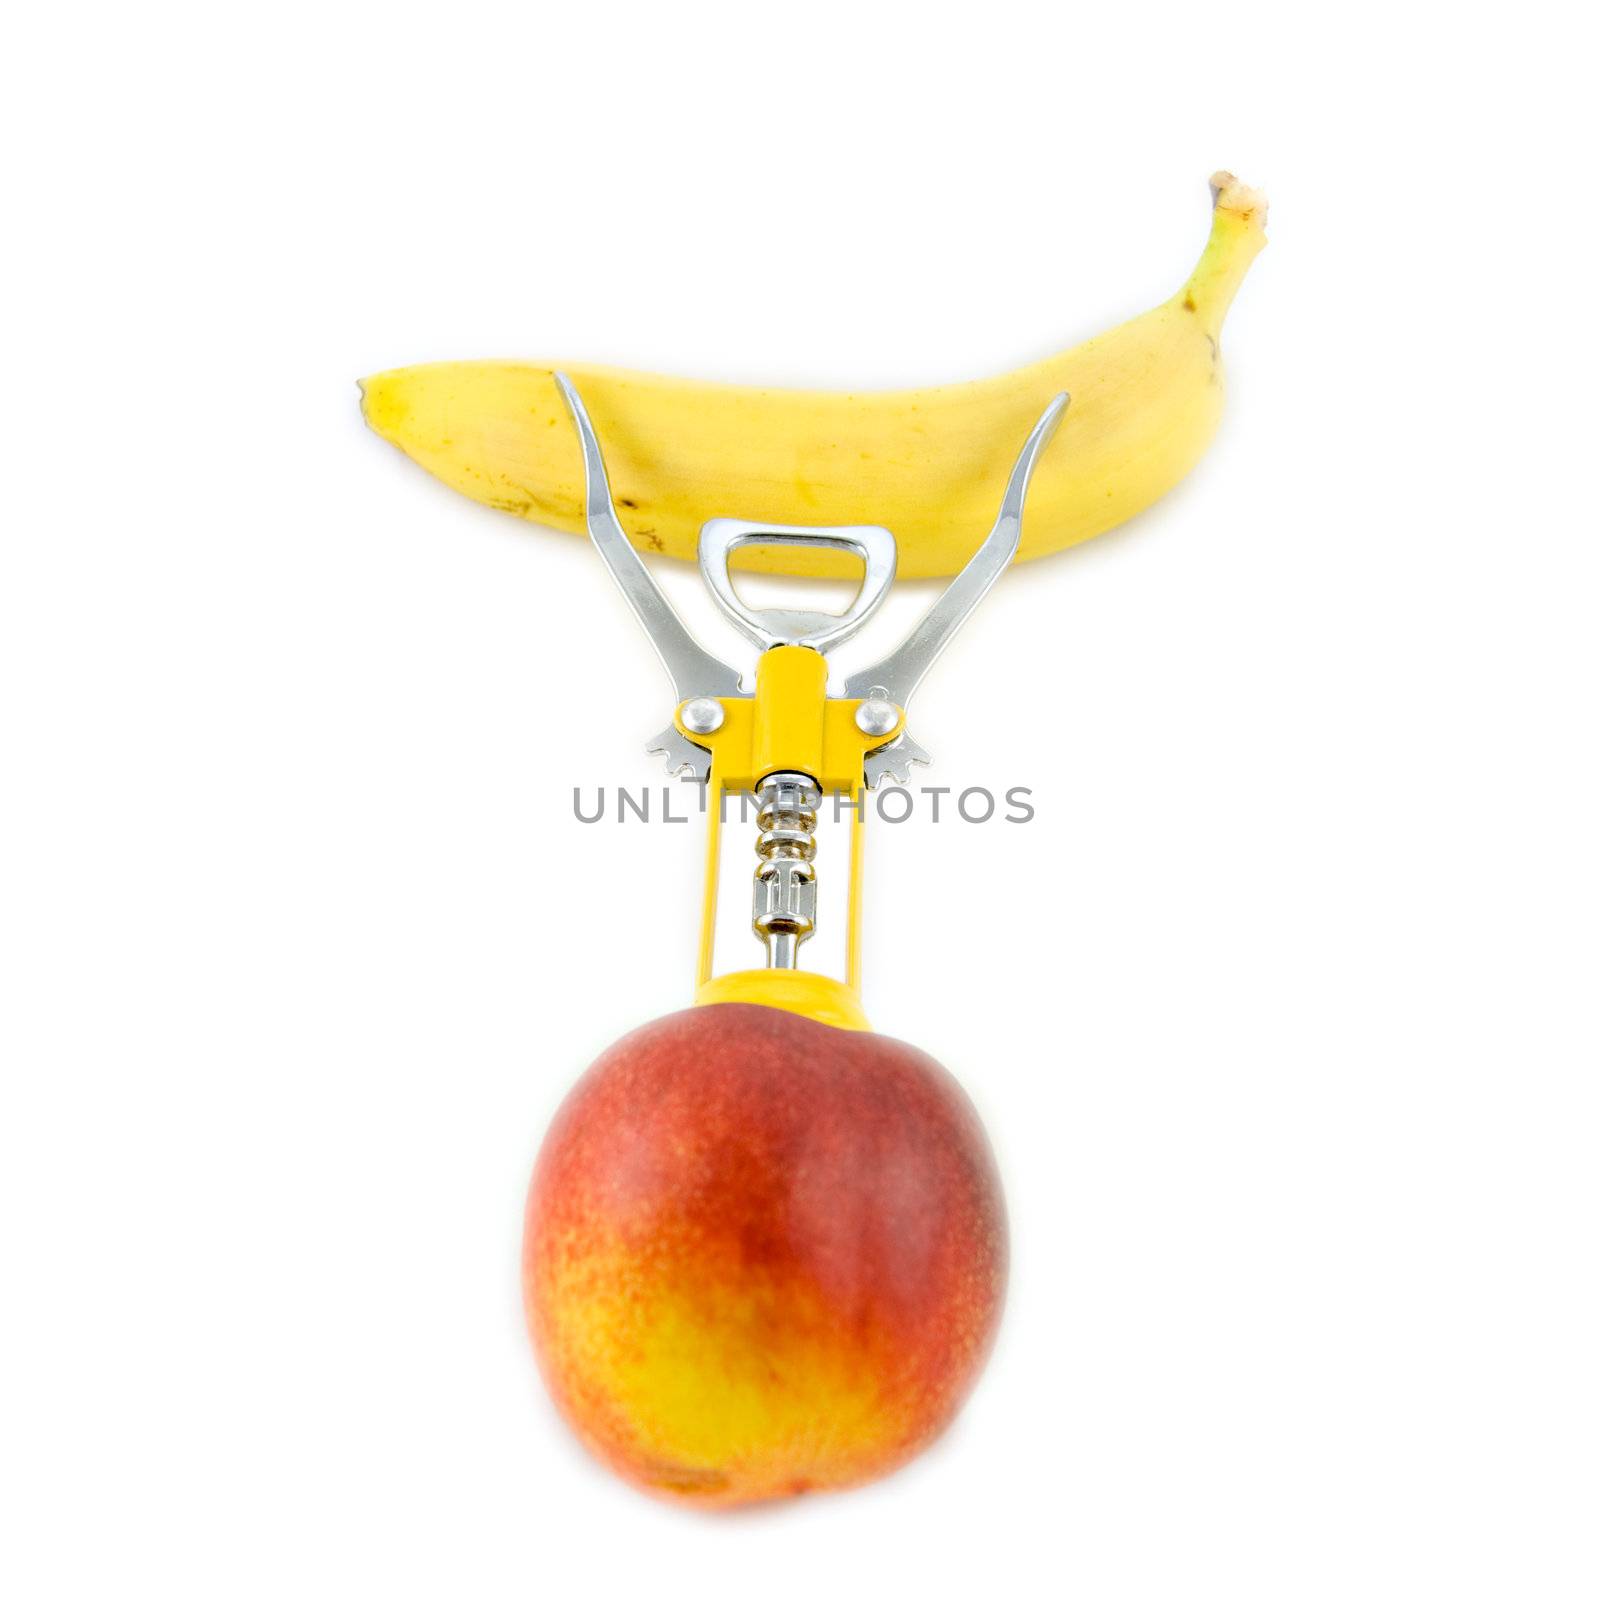 corkscrew in a peach by rmarinello